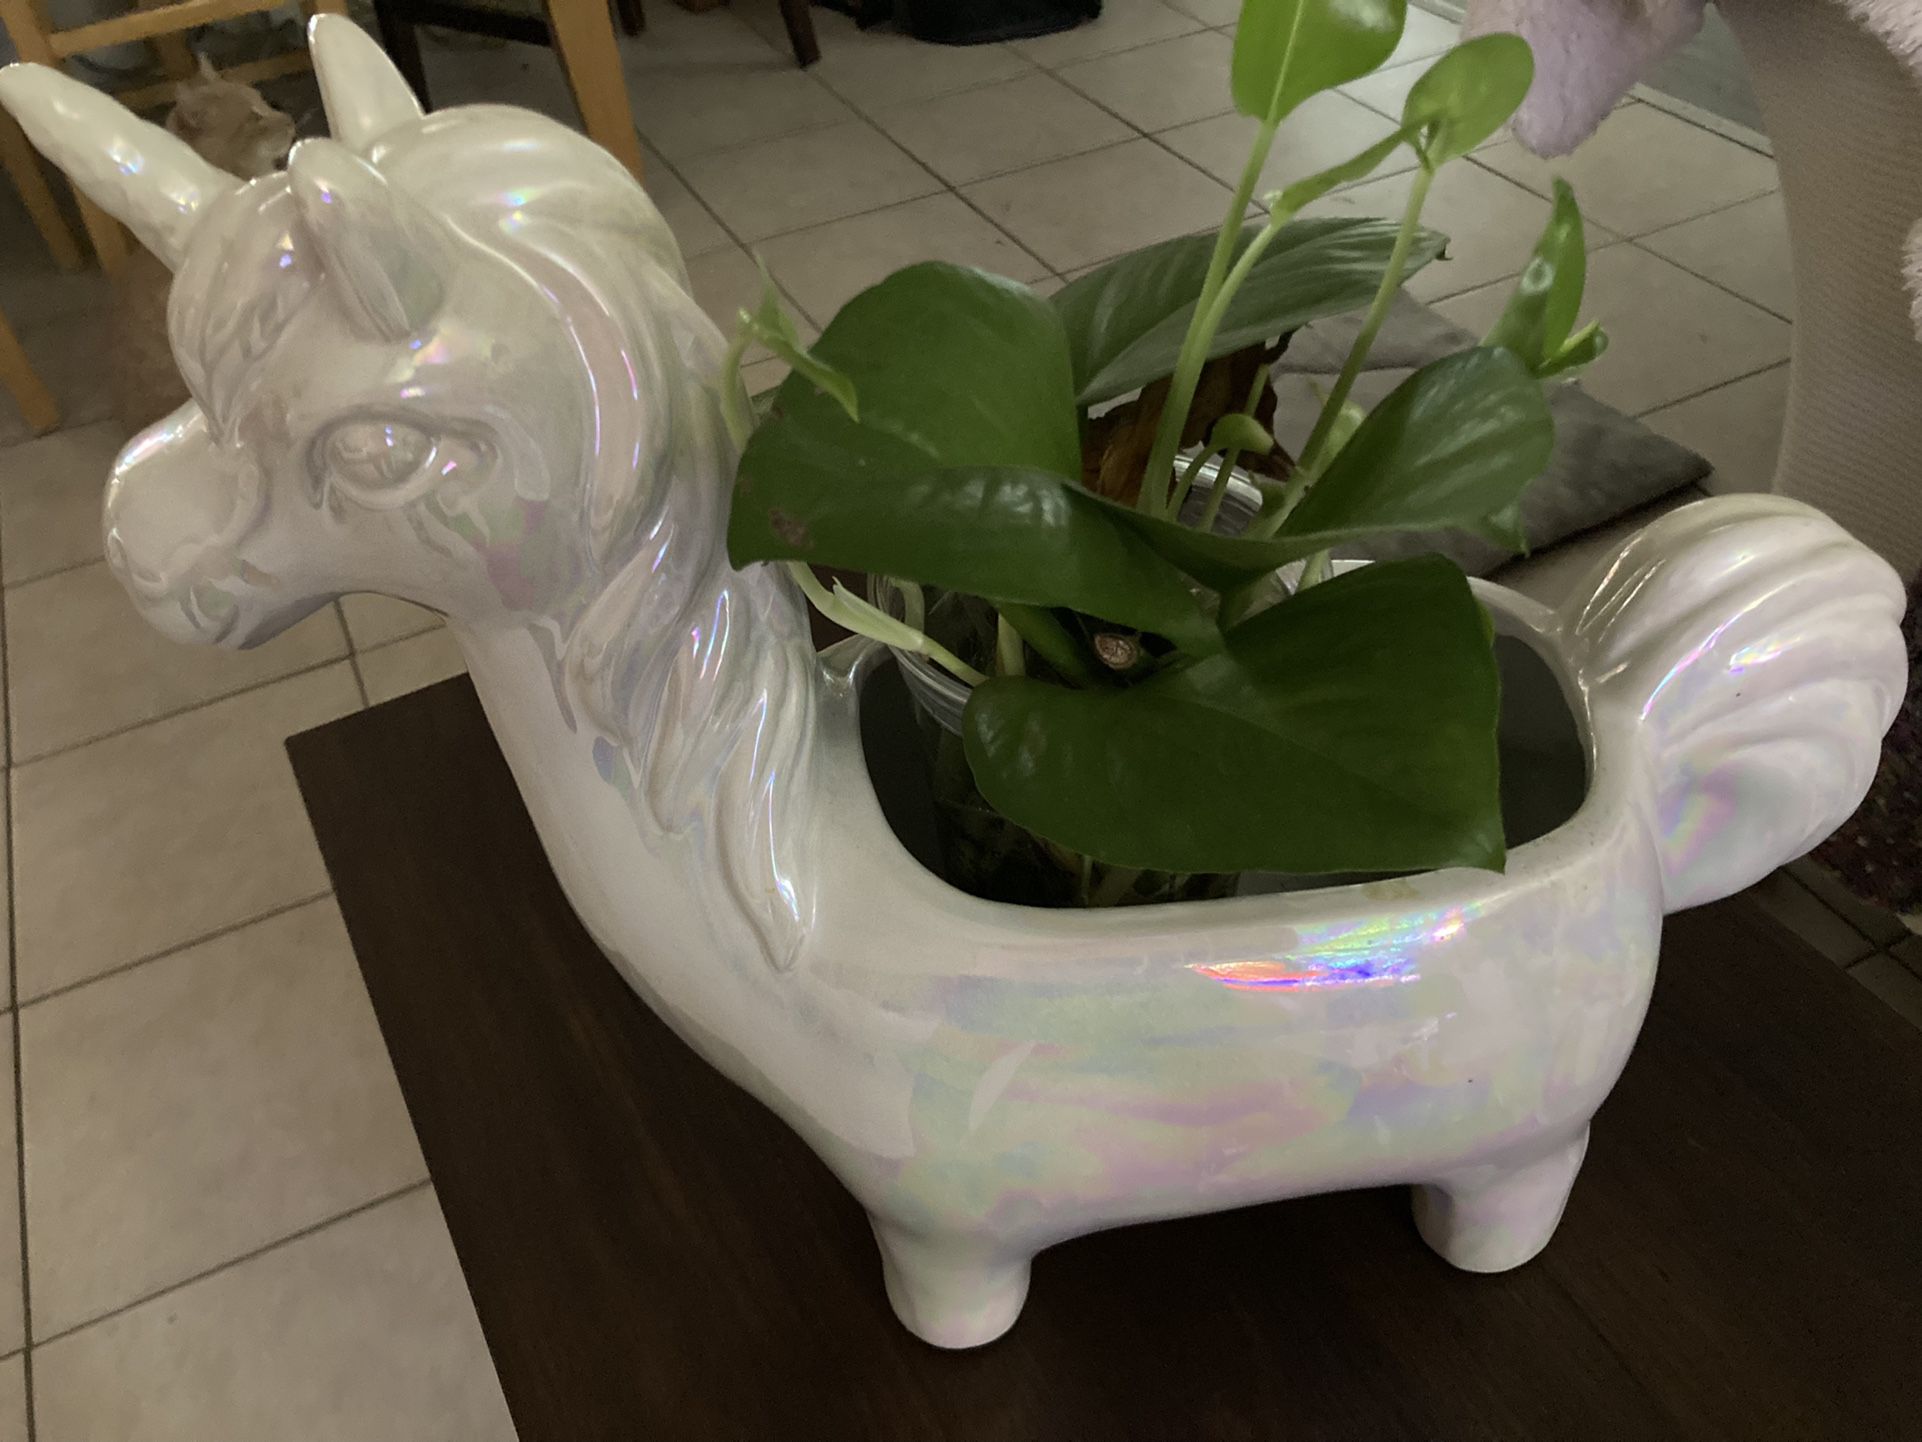 Unicorn plant holder🪴 🦄 